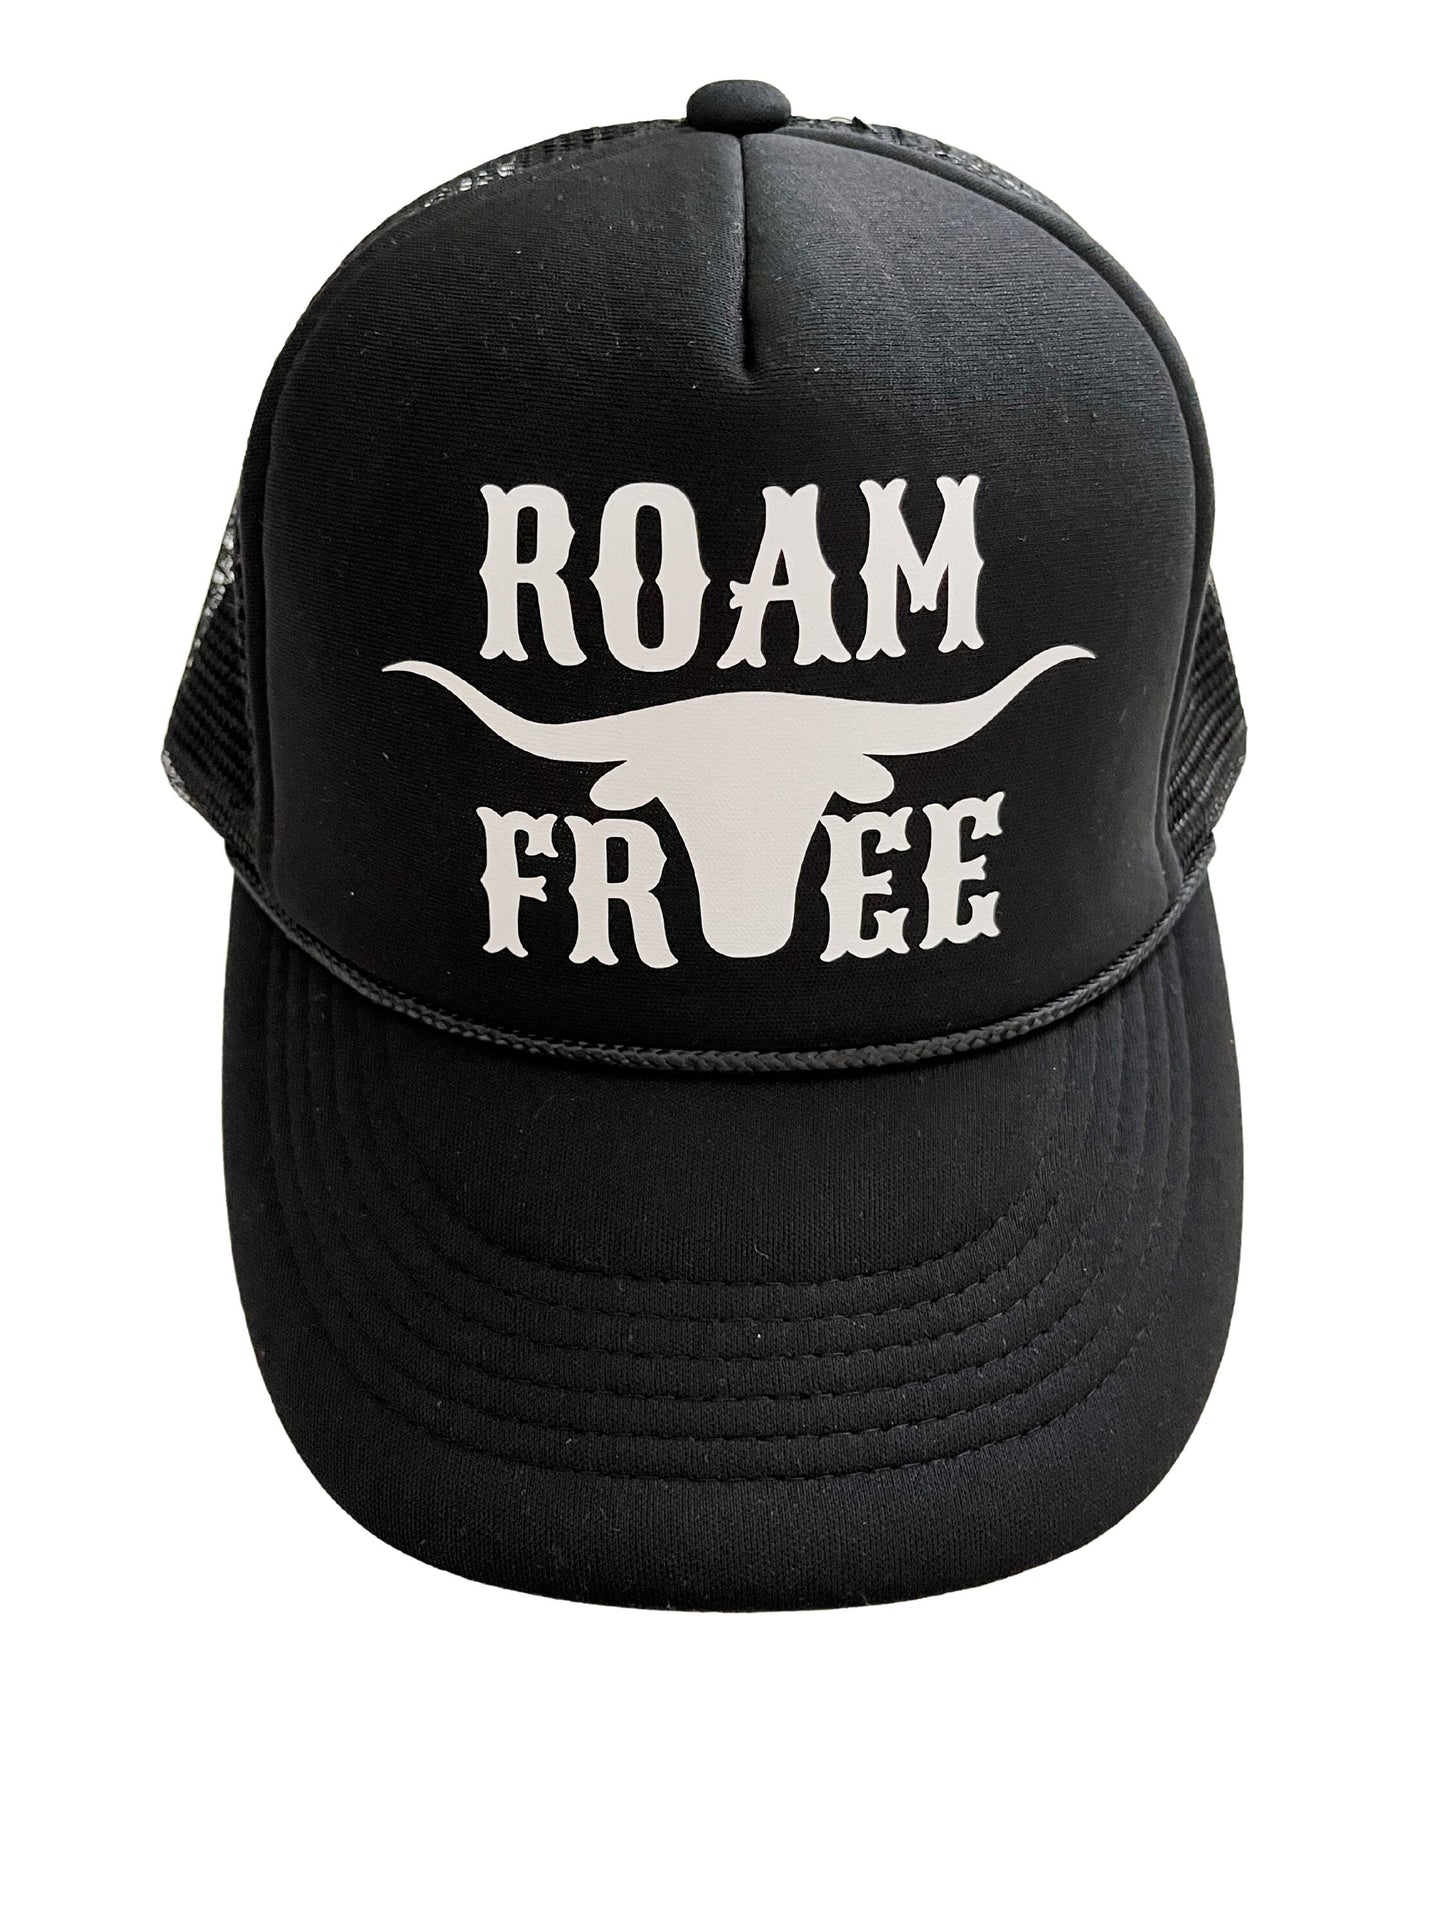 Cowboy Trucker Hat, Cute Trucker Hat, Women's Hats, Rodeo Hat, Western Hat, Snapback, Cowgirl Hat, Vacation Hat, Roam Free, Bull Skull, Bull